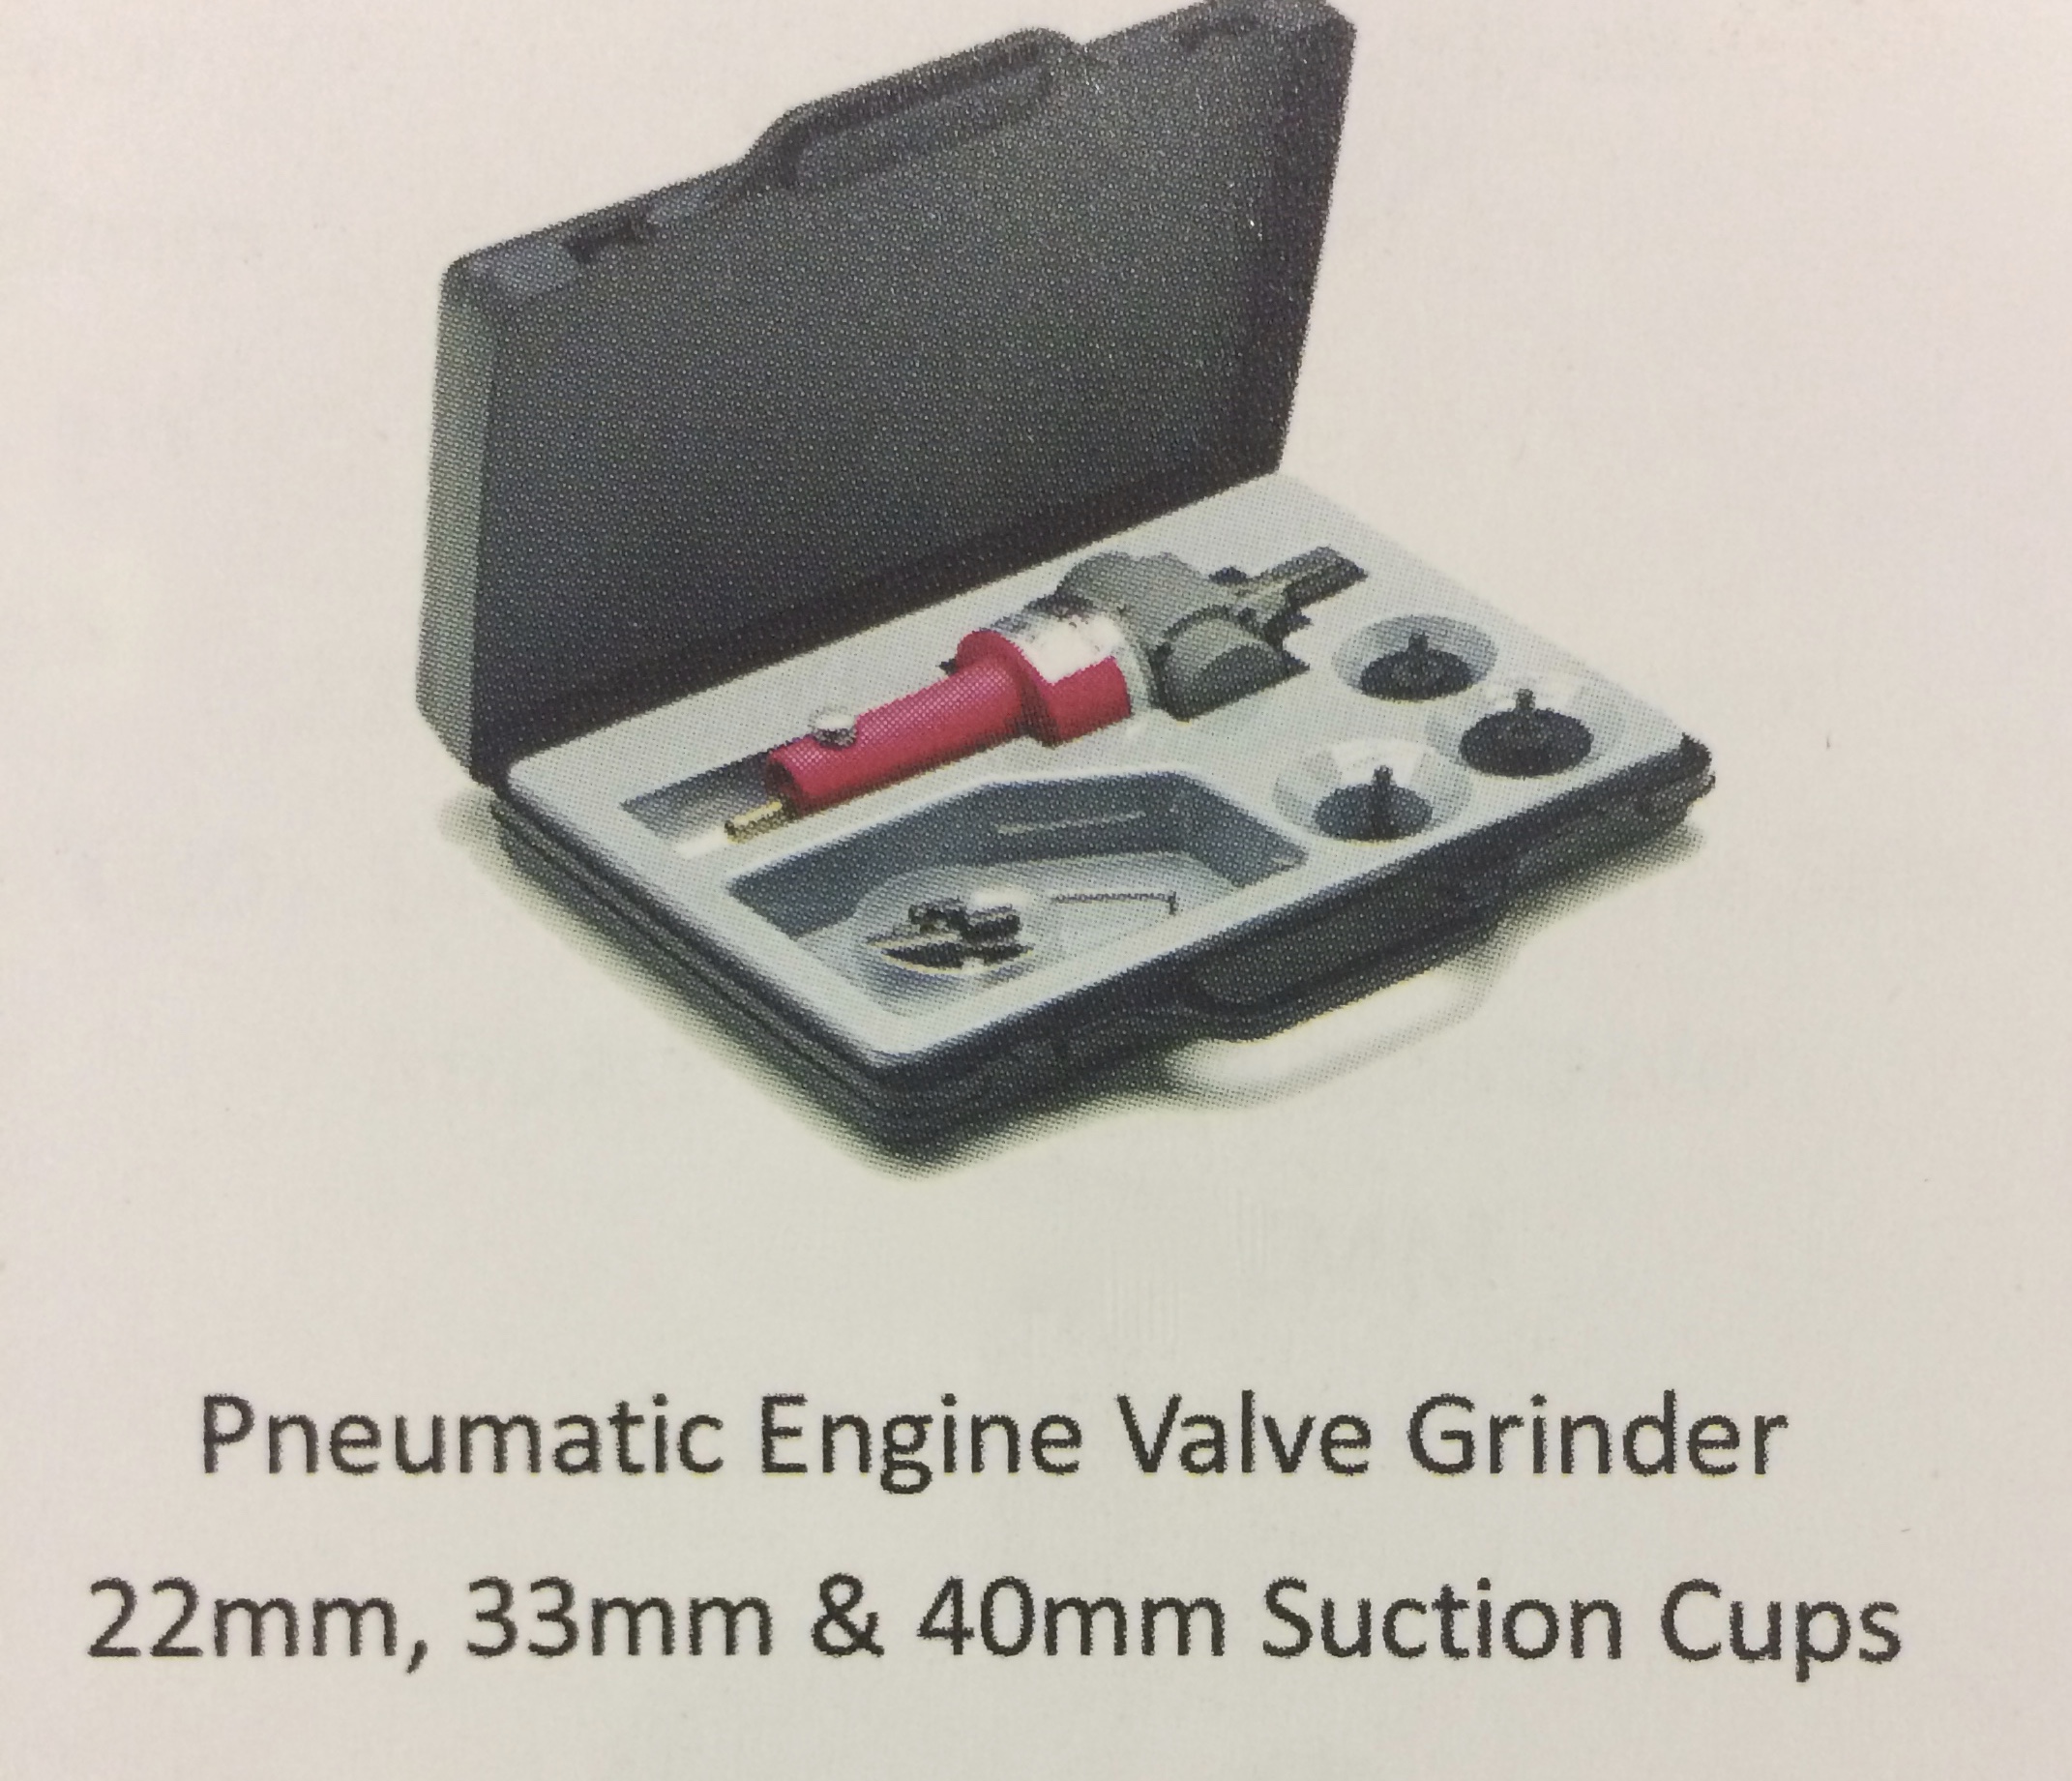 Pneumatic Engine Valve Grinder Image